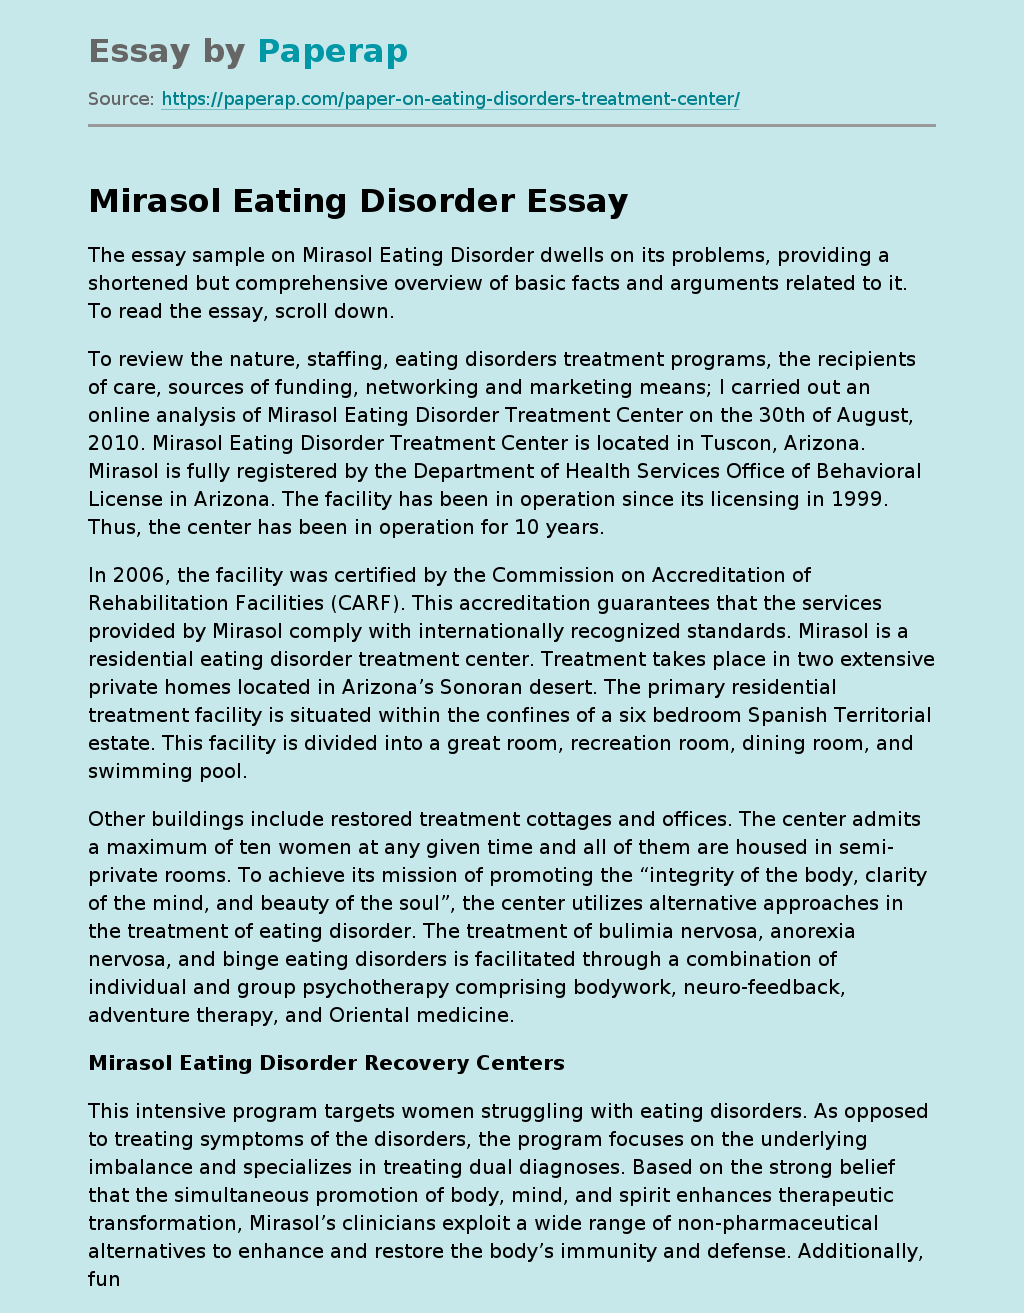 Mirasol Eating Disorder